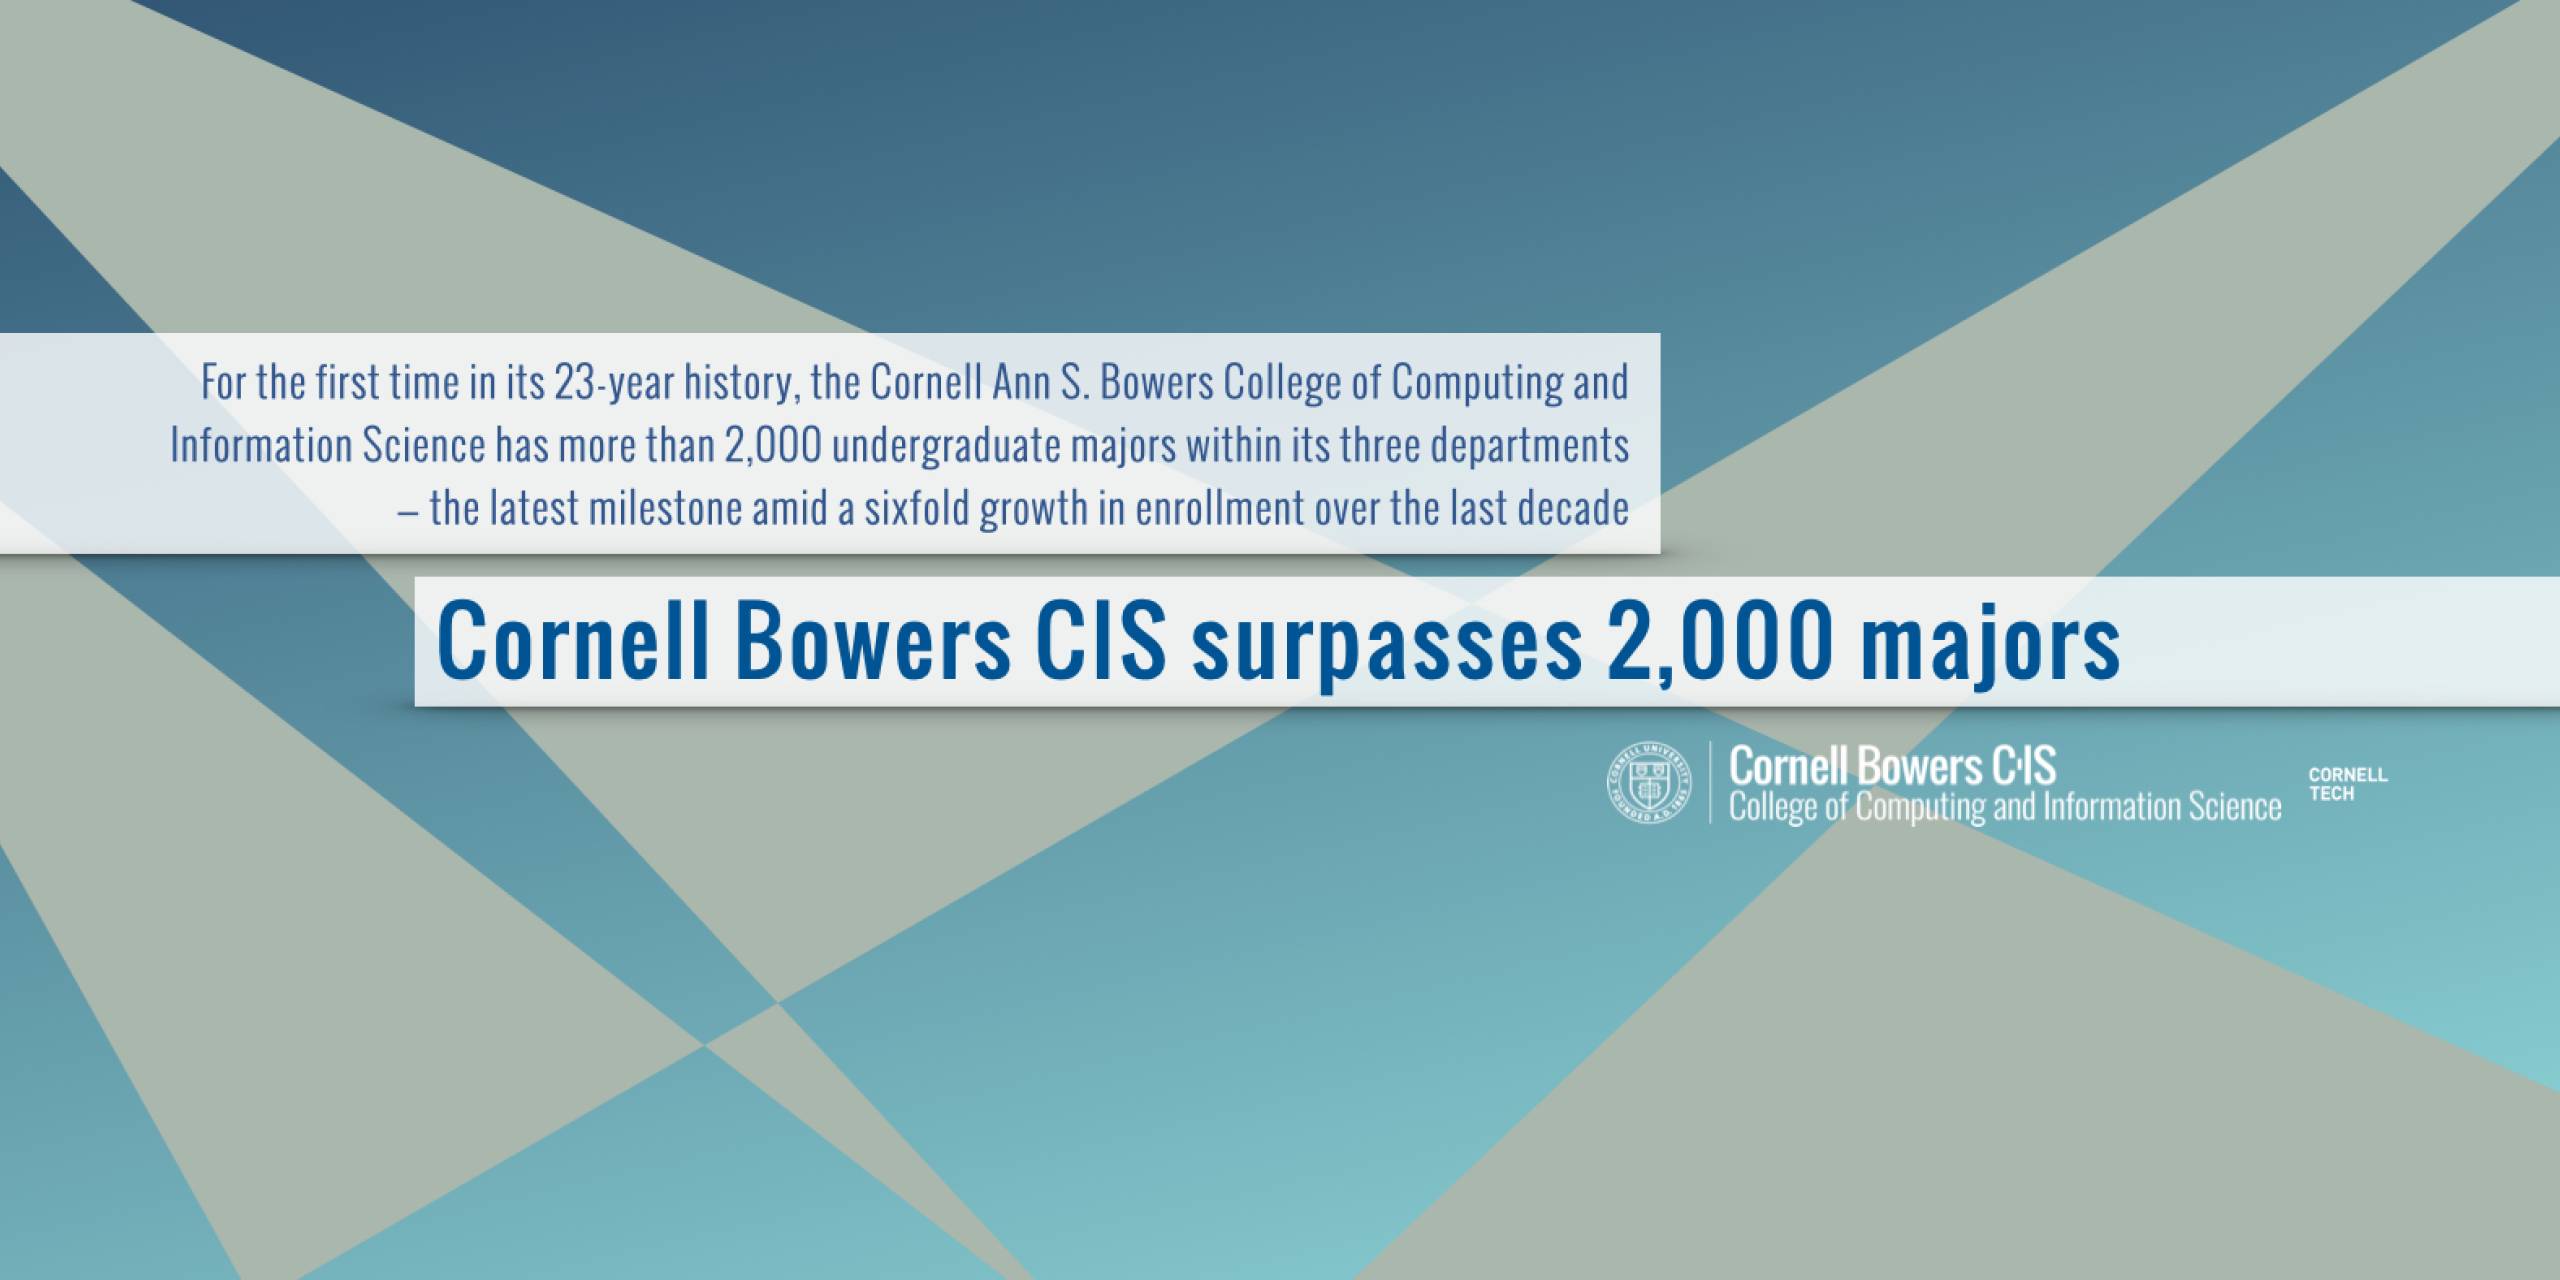 Cornell Bowers CIS Surpasses 2,000 Majors